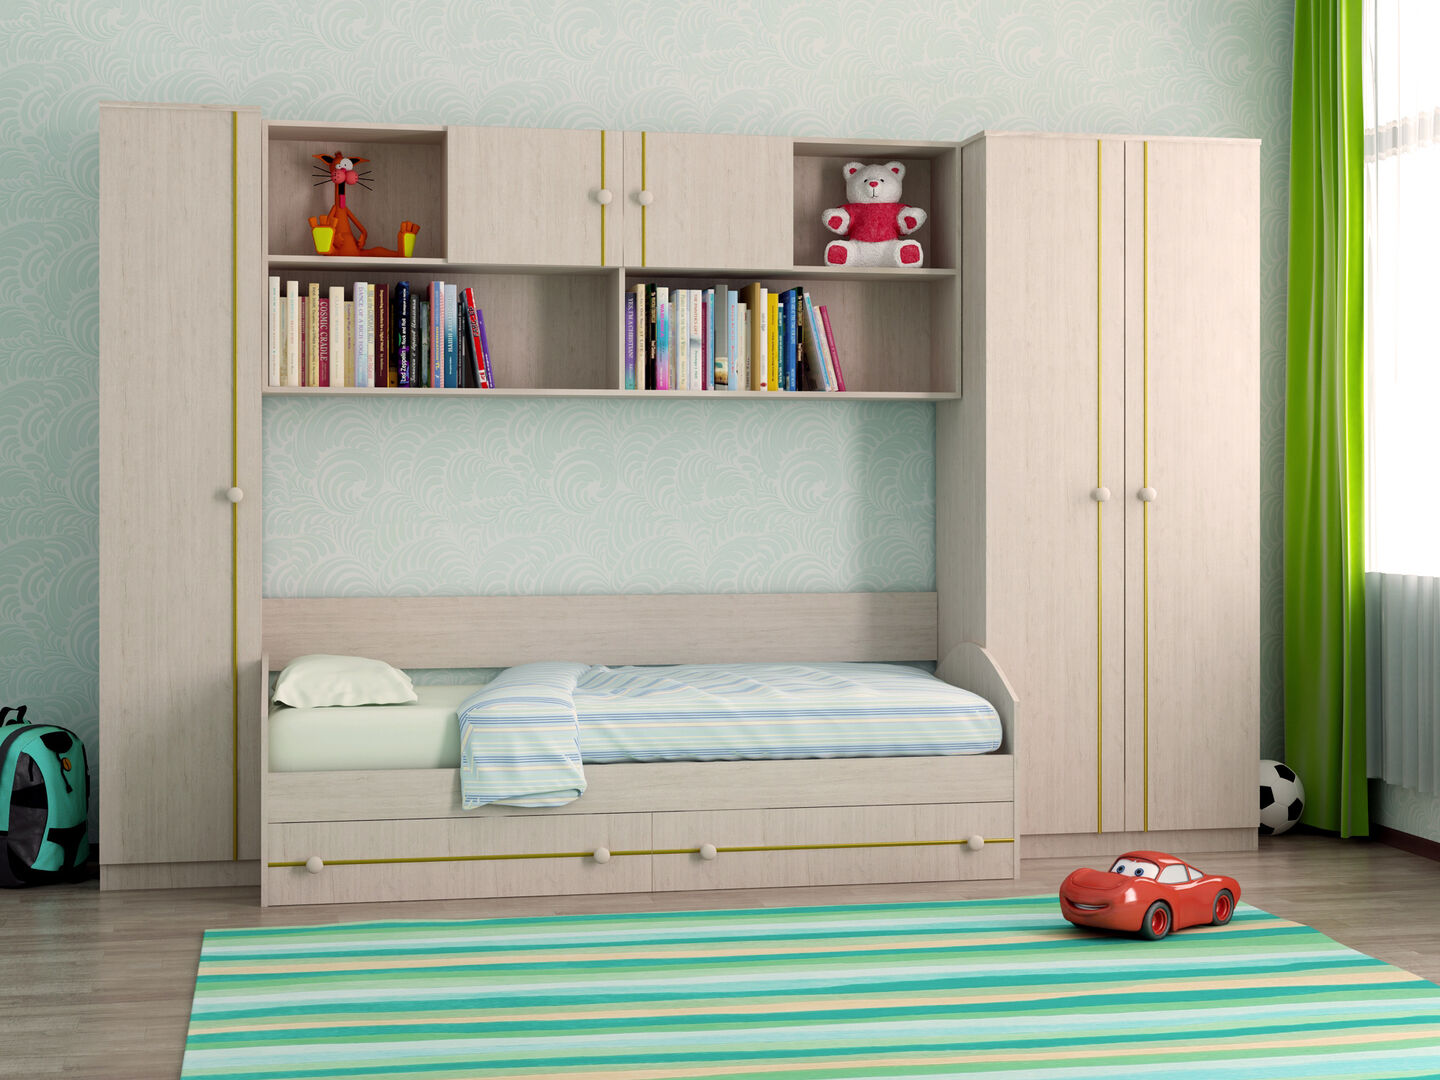 Мебель для детской комнаты фабрики Стиль Отличник